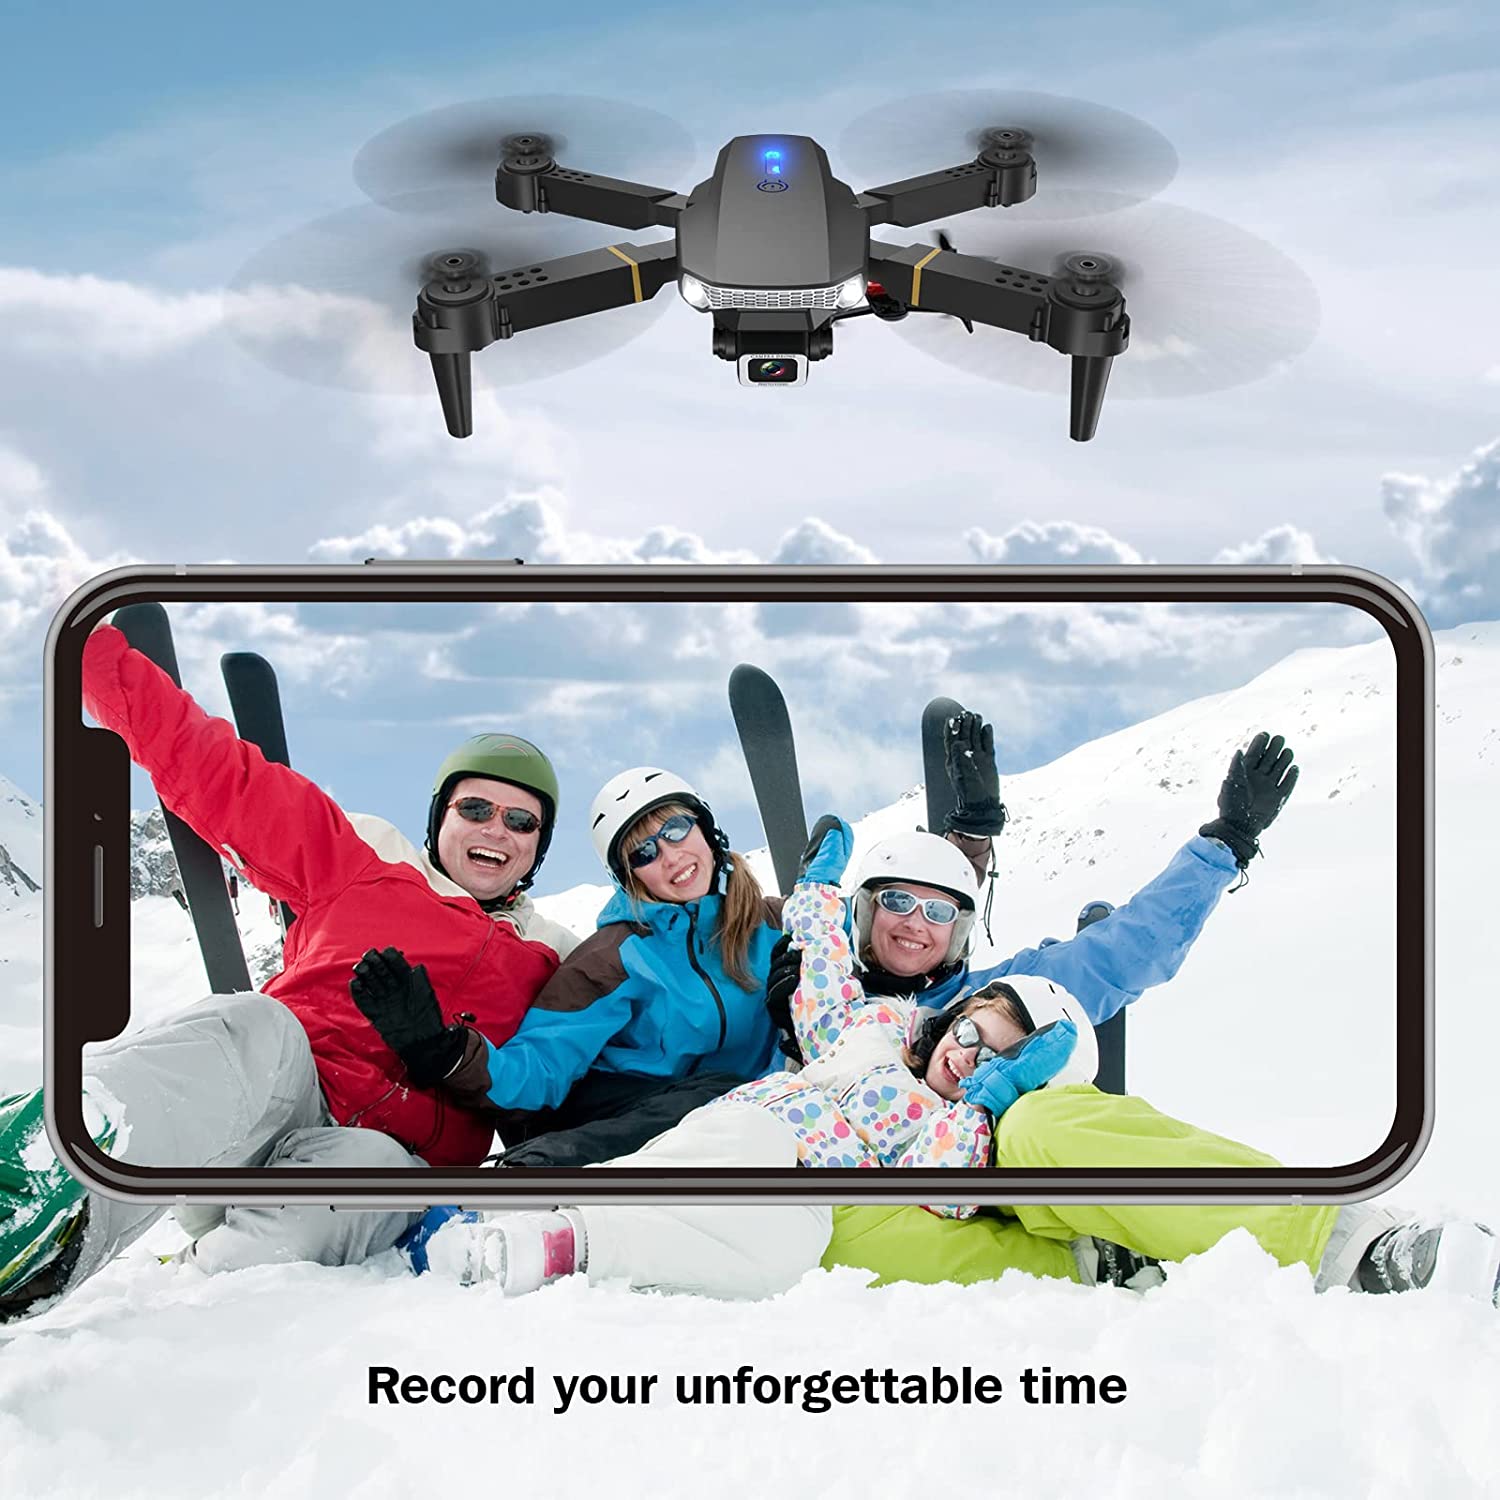 tech rc Drone avec Caméra 720P, Drone Caméra Temps de Vol de 20 Minutes,  360°Flips, avec 2 Batteries Rechargeables, Mode sans Tête, Maintien de